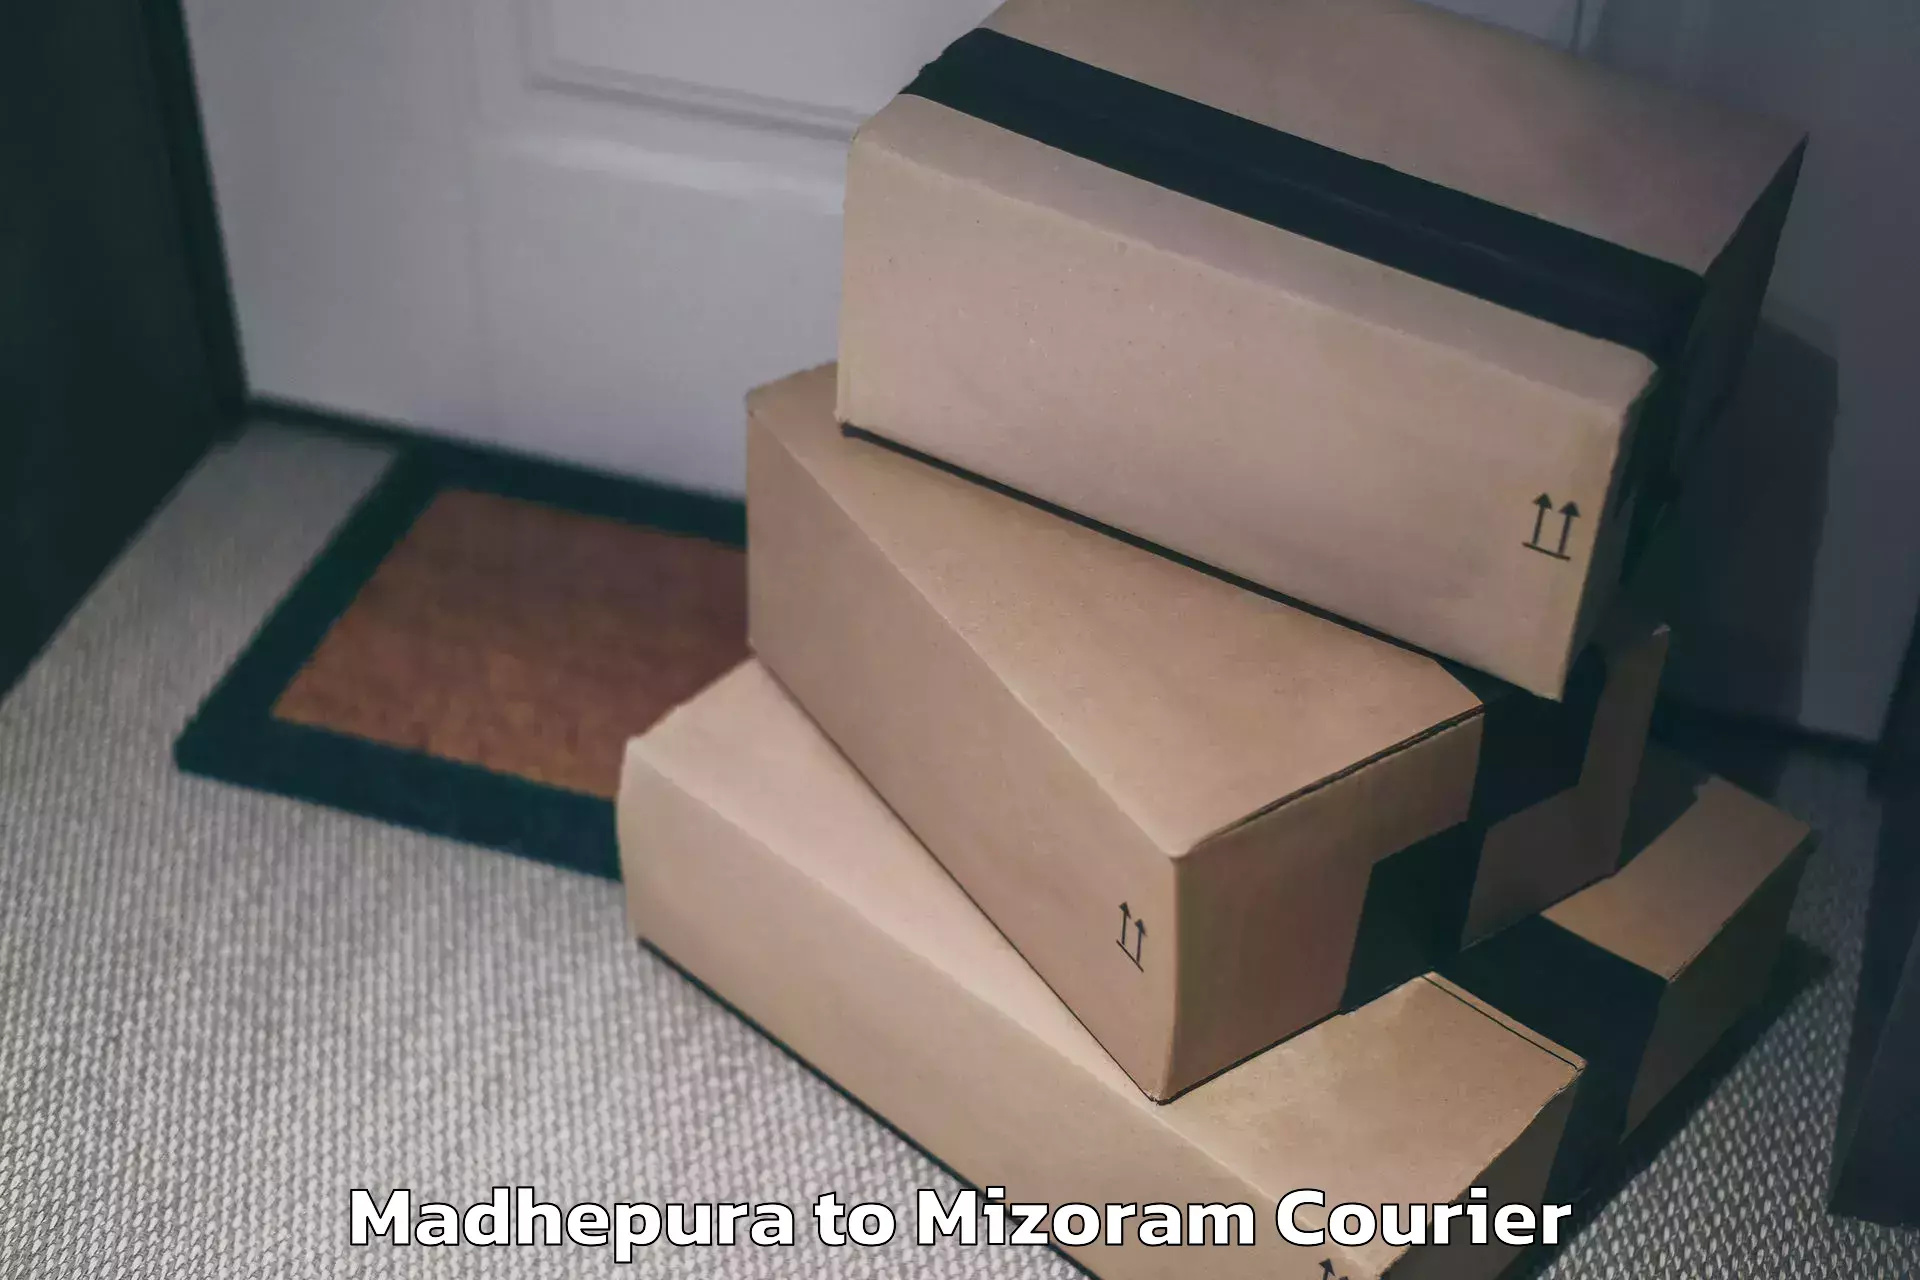 Luggage delivery app Madhepura to Mizoram